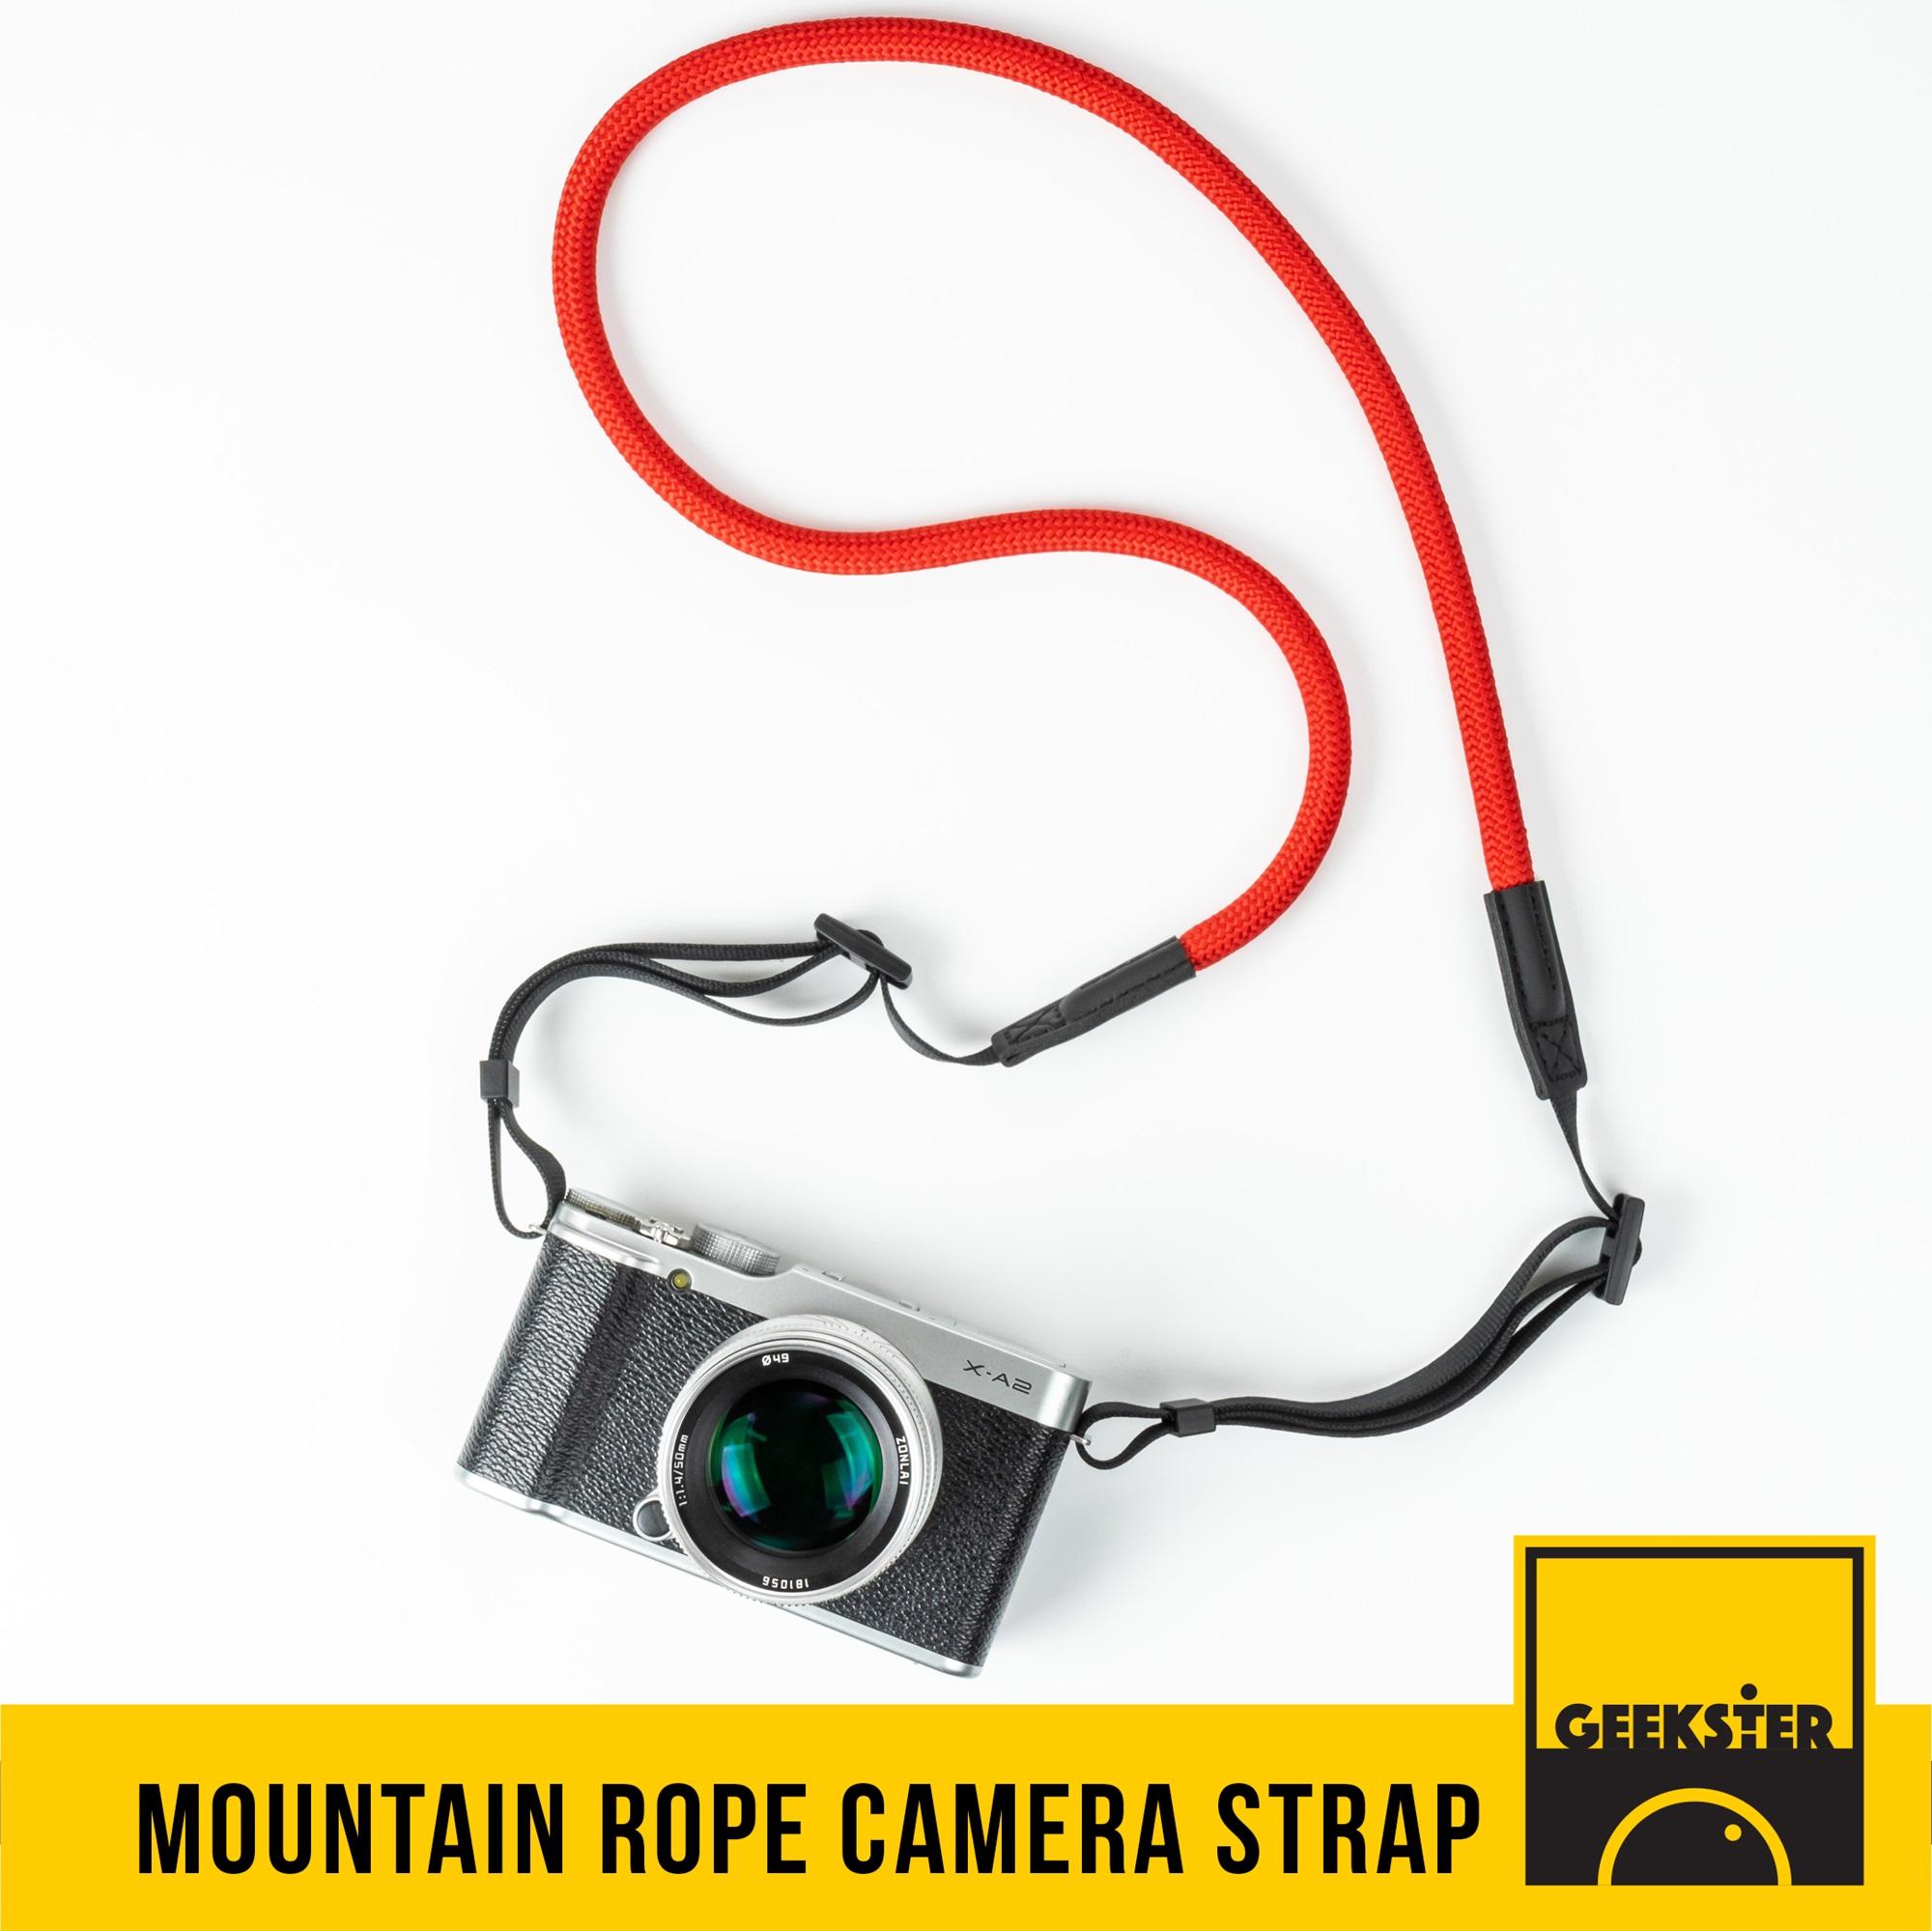 สายคล้องกล้อง เชือกปีนเขา ปลายแบน คล้องคอ ( Leica Style Camera Strap สายคล้อง สาย กล้อง สายคล้องคอ ) ( Geekster )